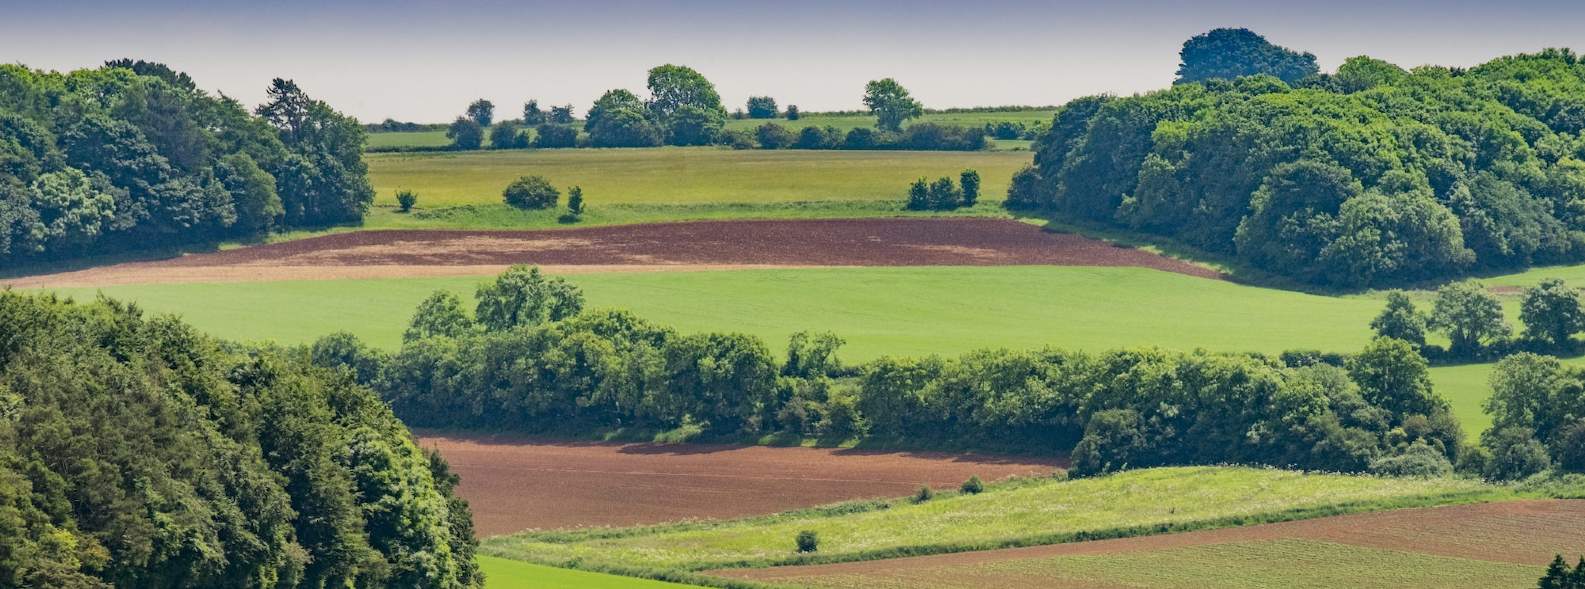 British farmland